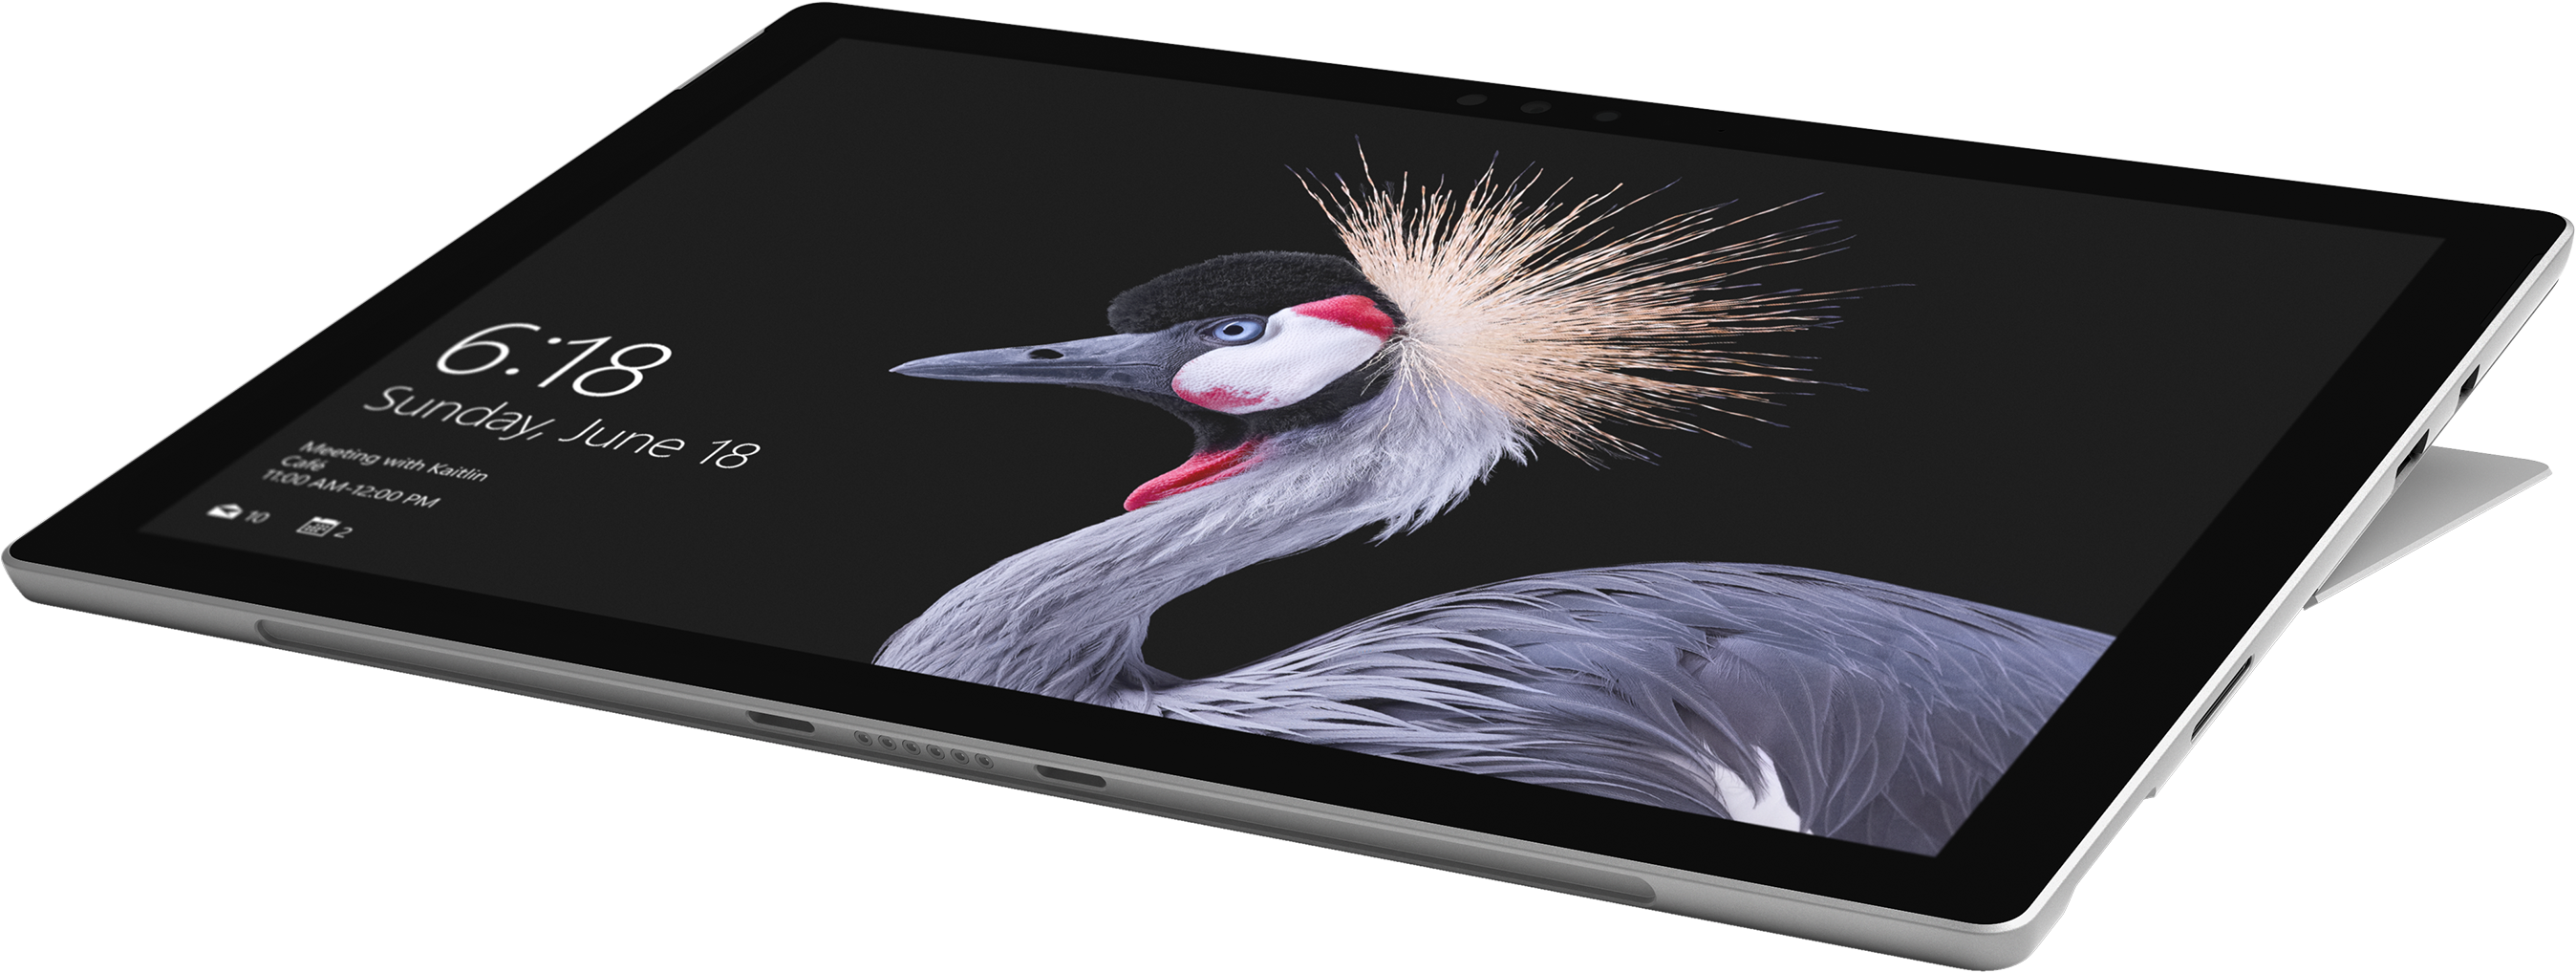 Surface Pro (5th Gen) + Platinum Signature Type Cover Bundle